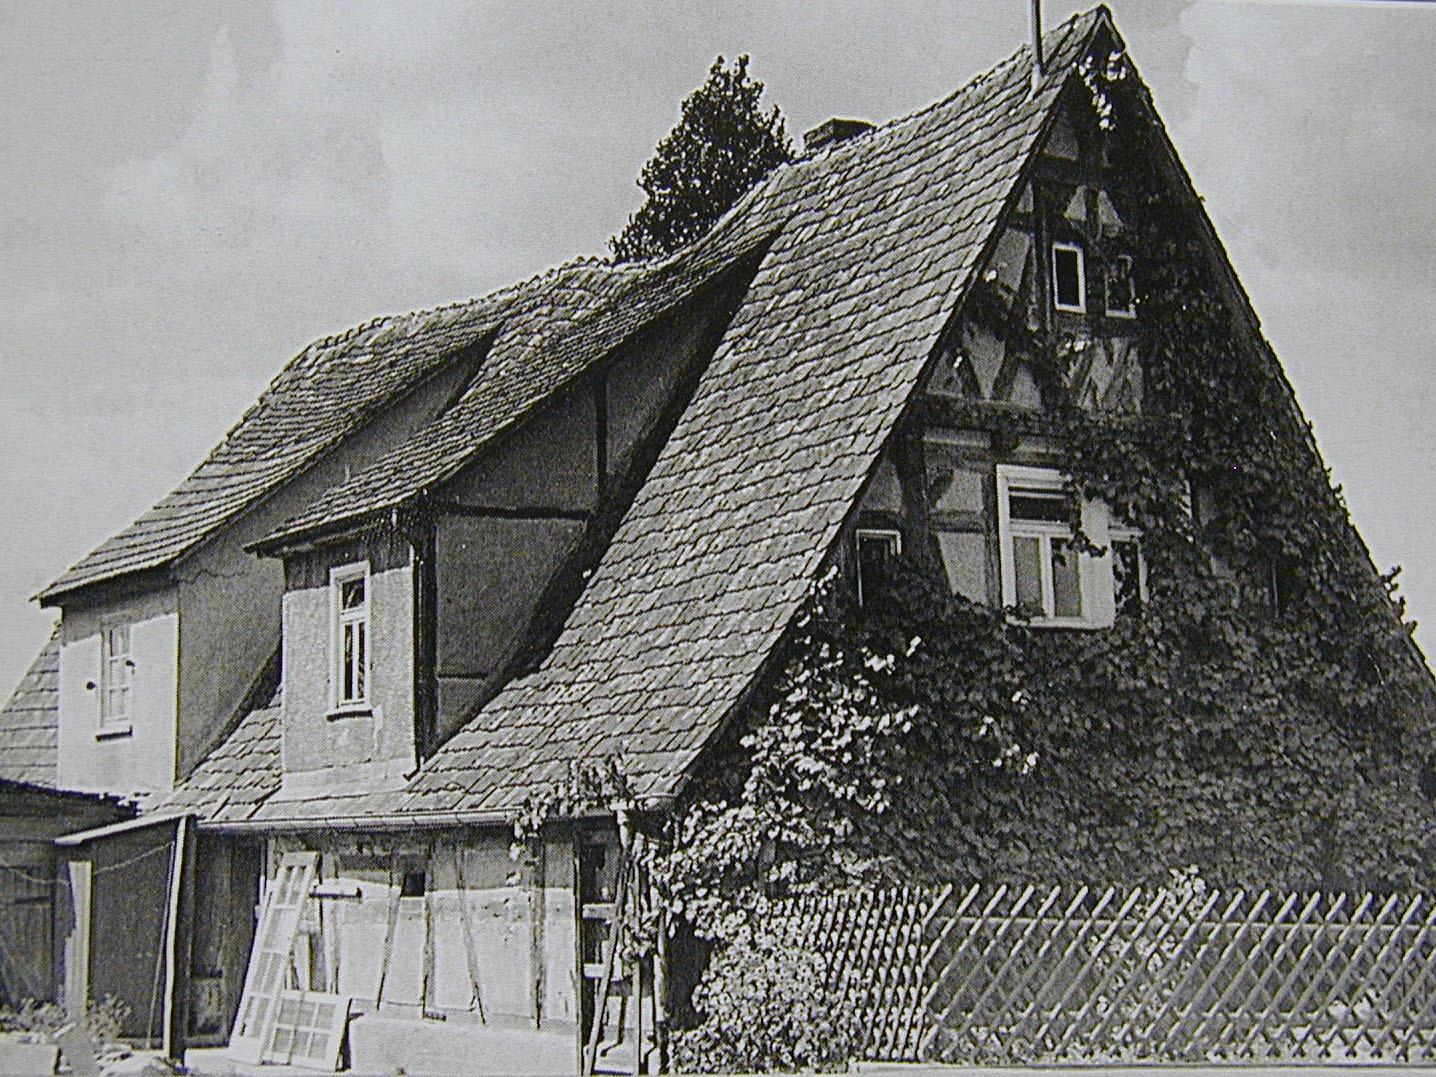 Schafhaus